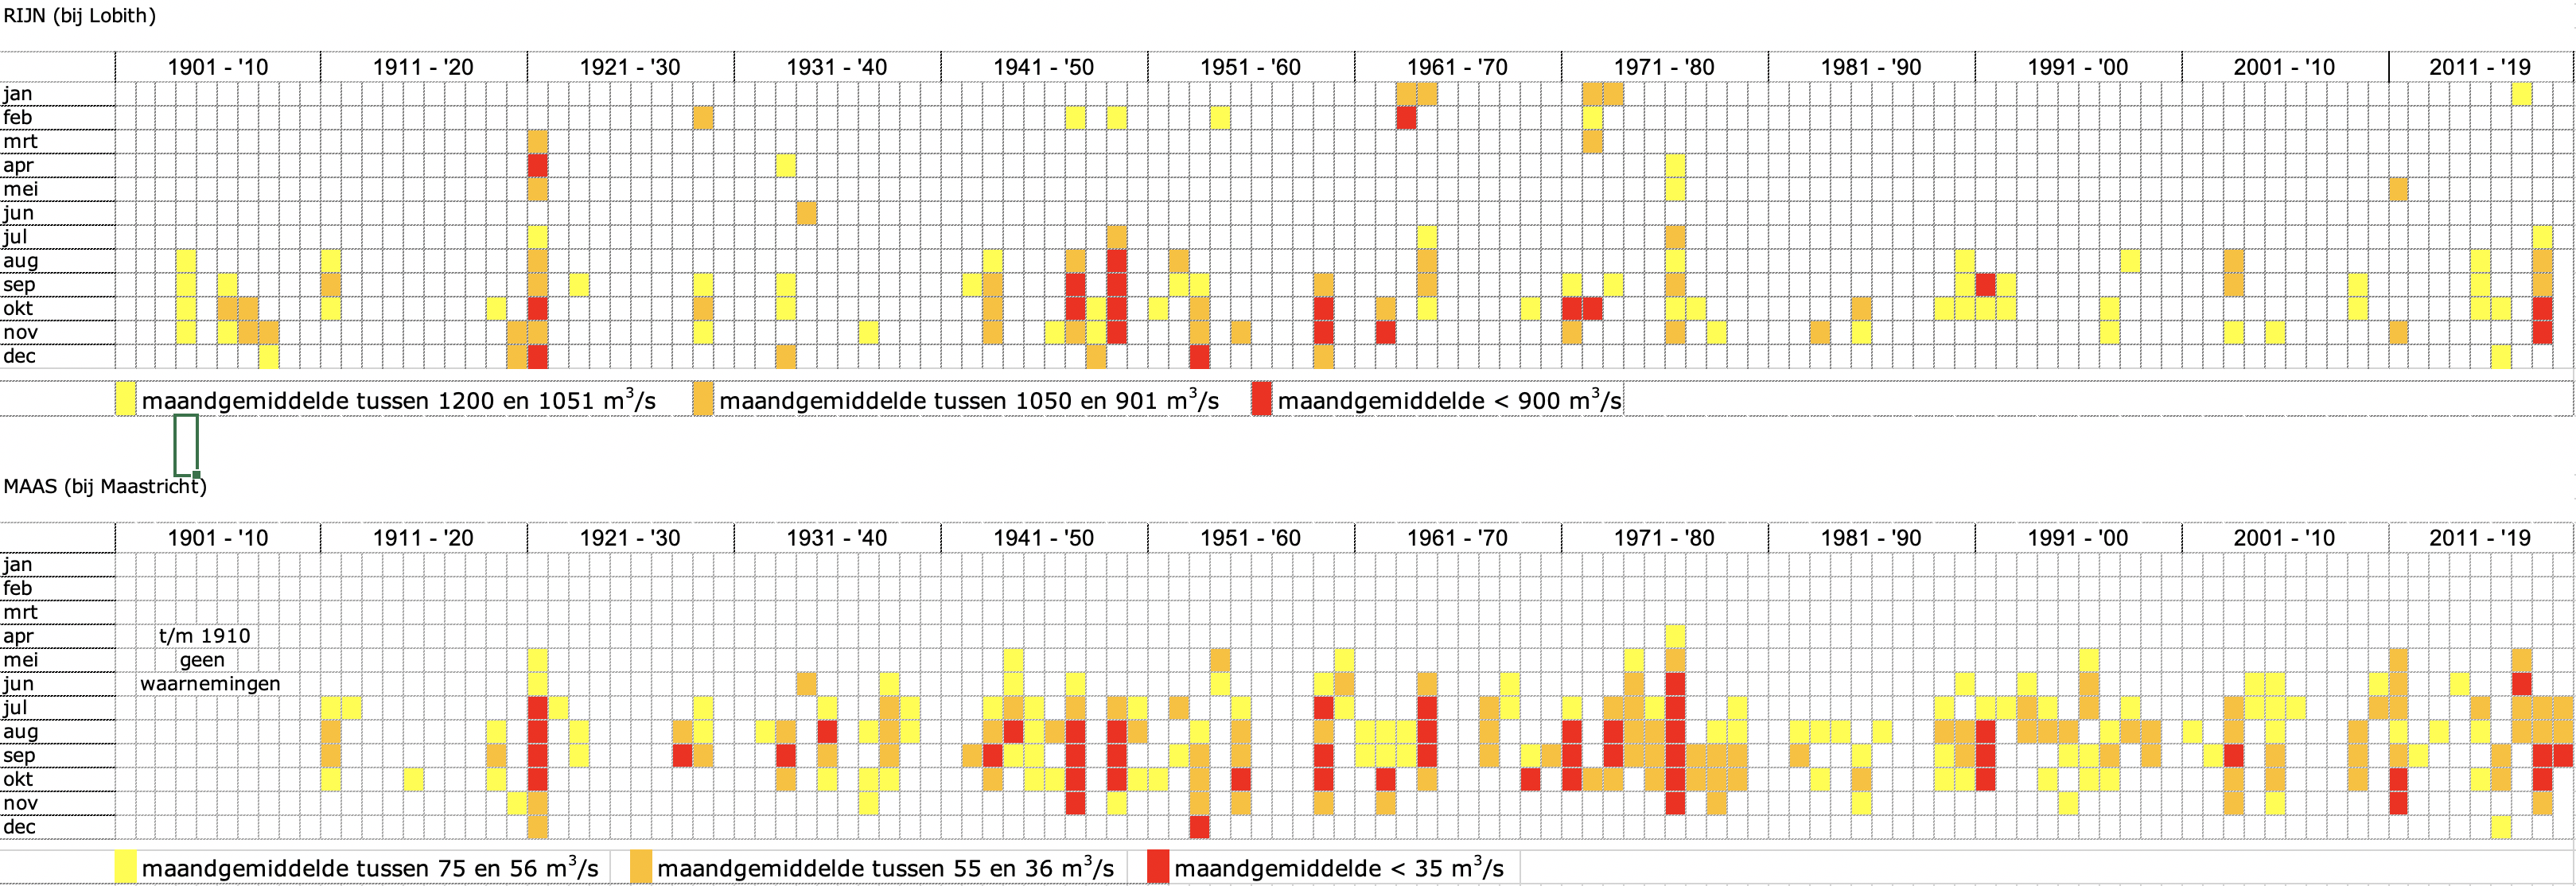 Maanden met lage, zeer lage en extreem, lage afvoeren sinds 1901 in de Rijn (boven) en sinds 1911 in de Maas (onder)